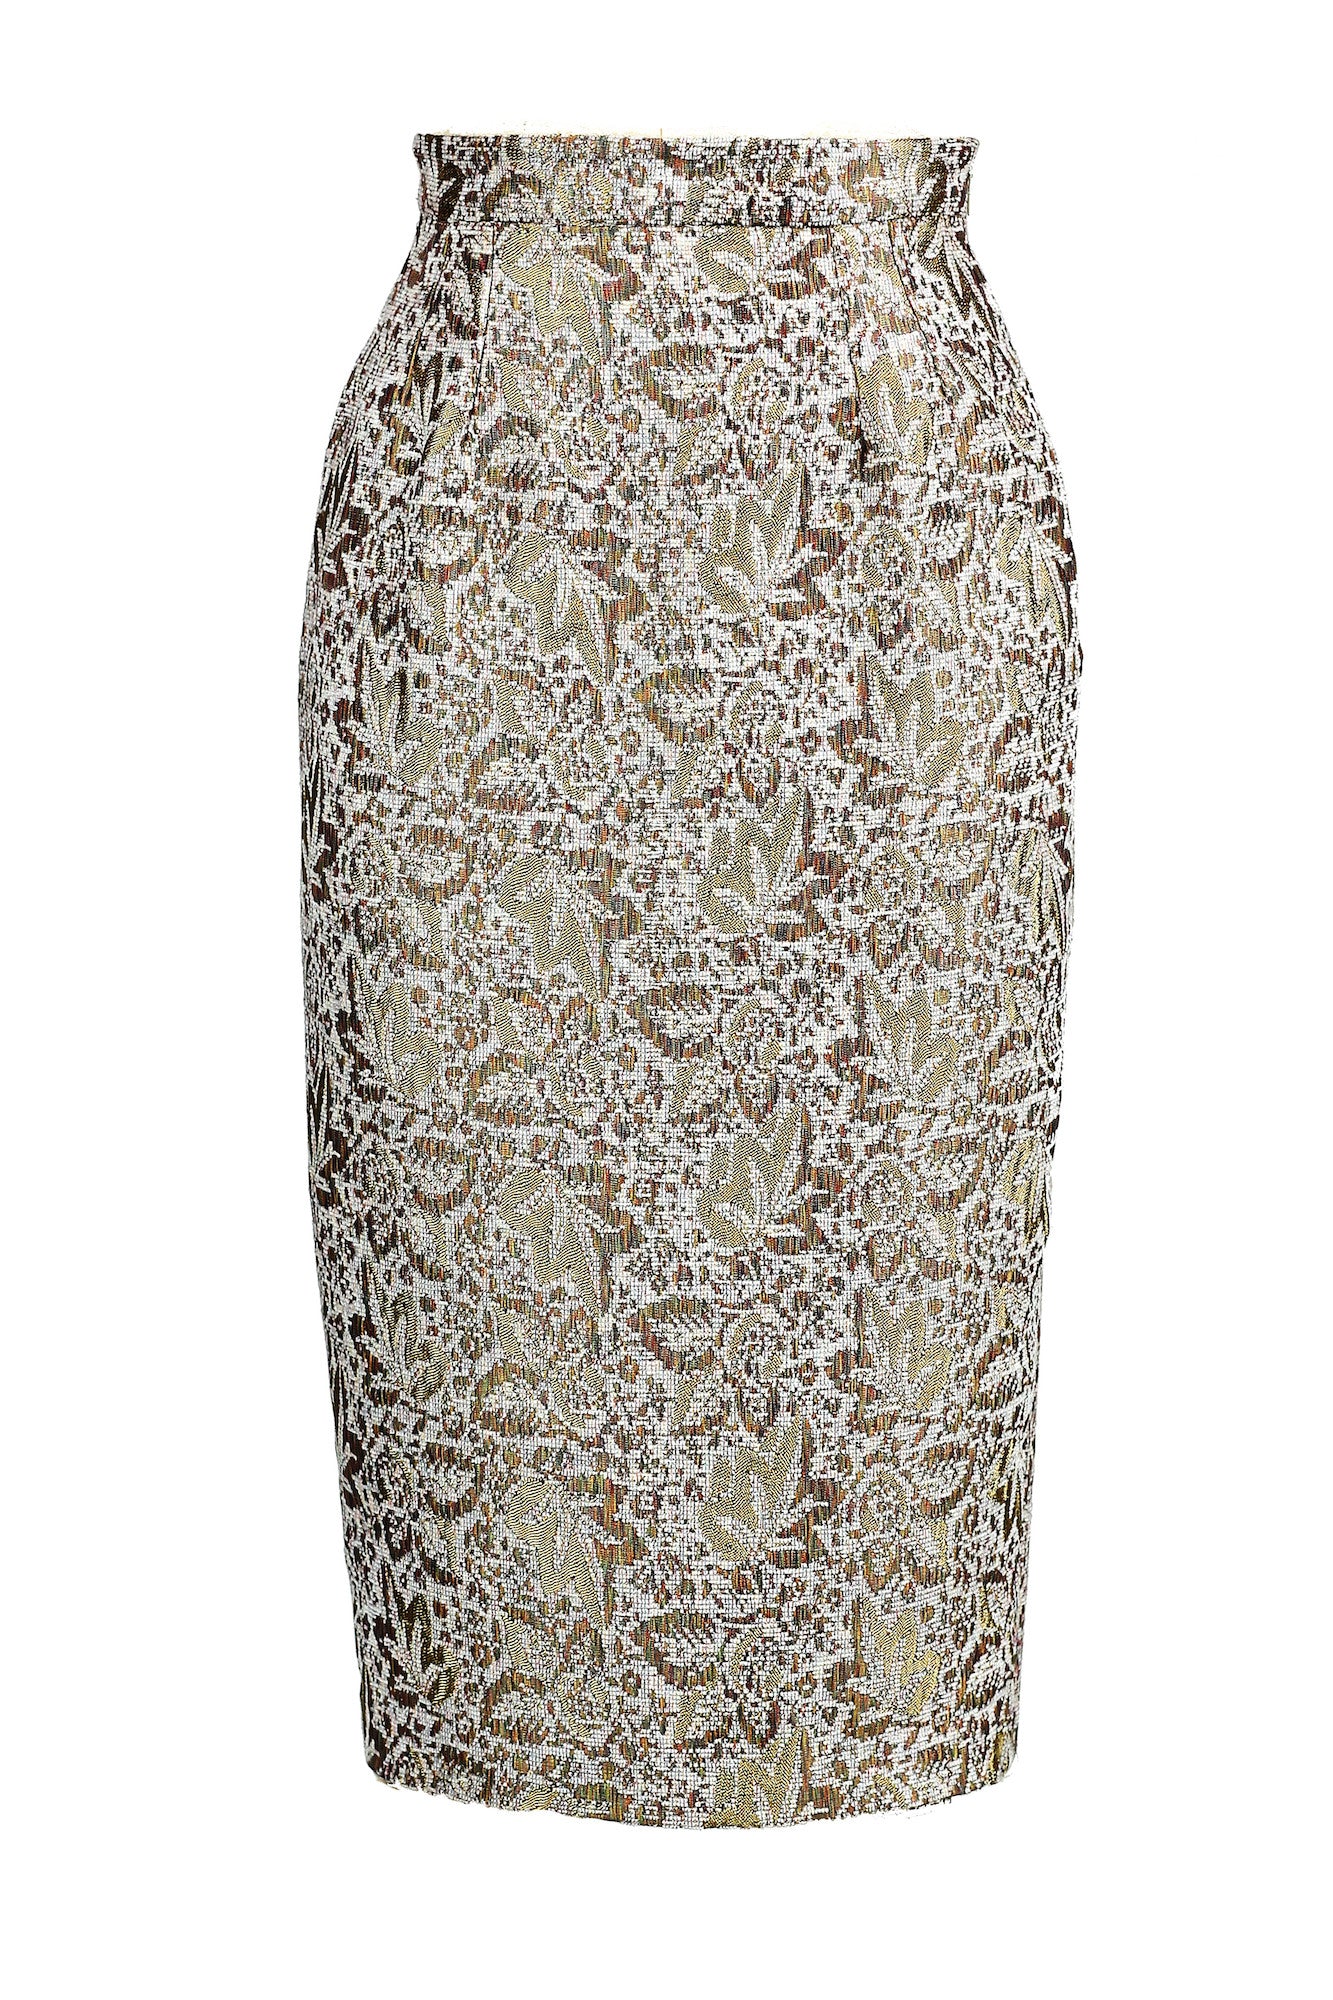 Textured High-waisted Pencil Skirt for All Seasons - Steve Guthrie - 3